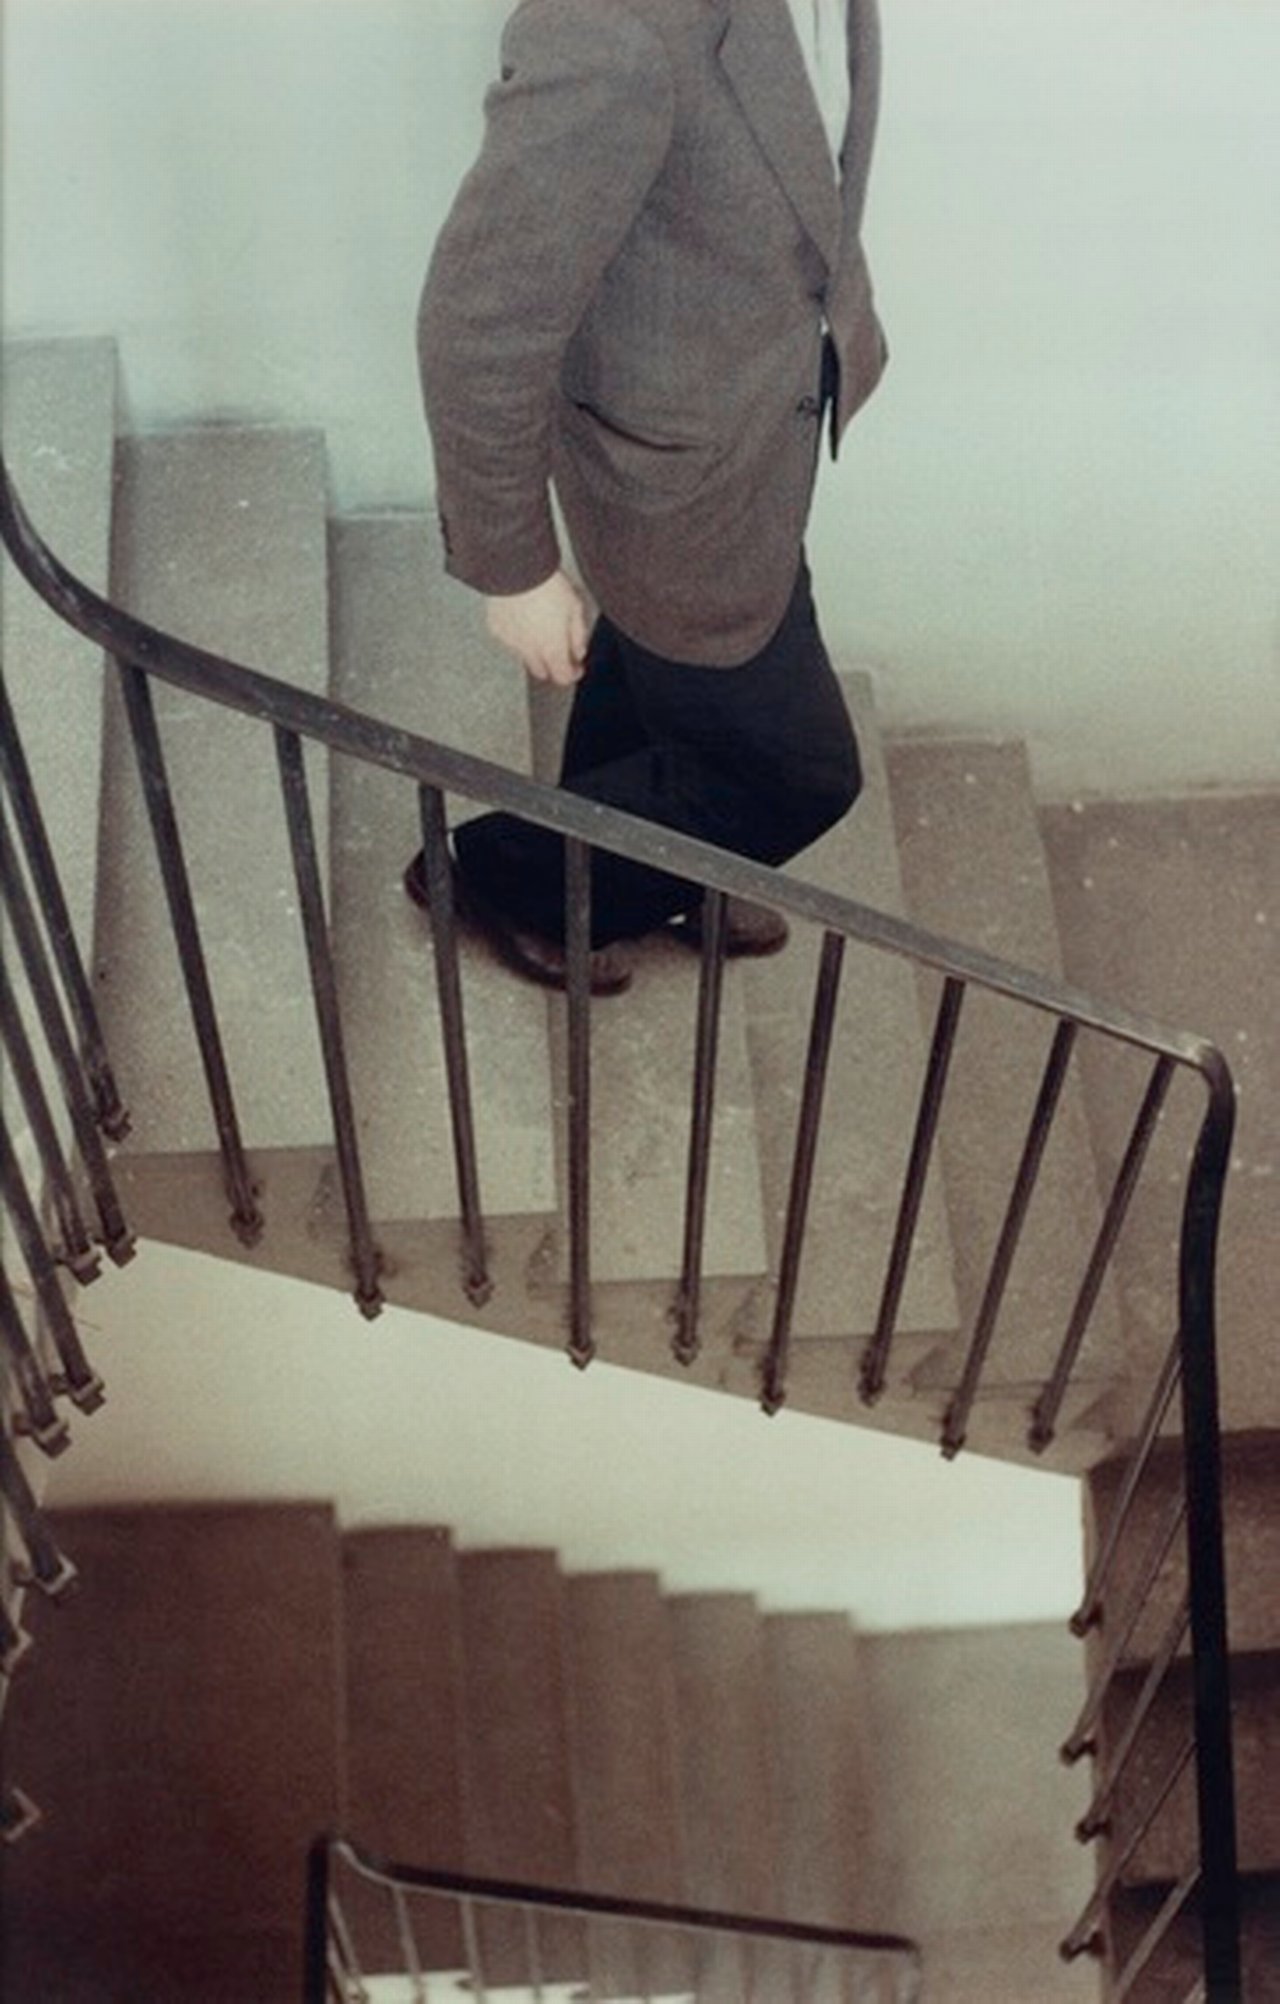 Günther Förg, “Stairwell Munich,” 1984/1998, Color Photograph, Collection Deutsche Bank.